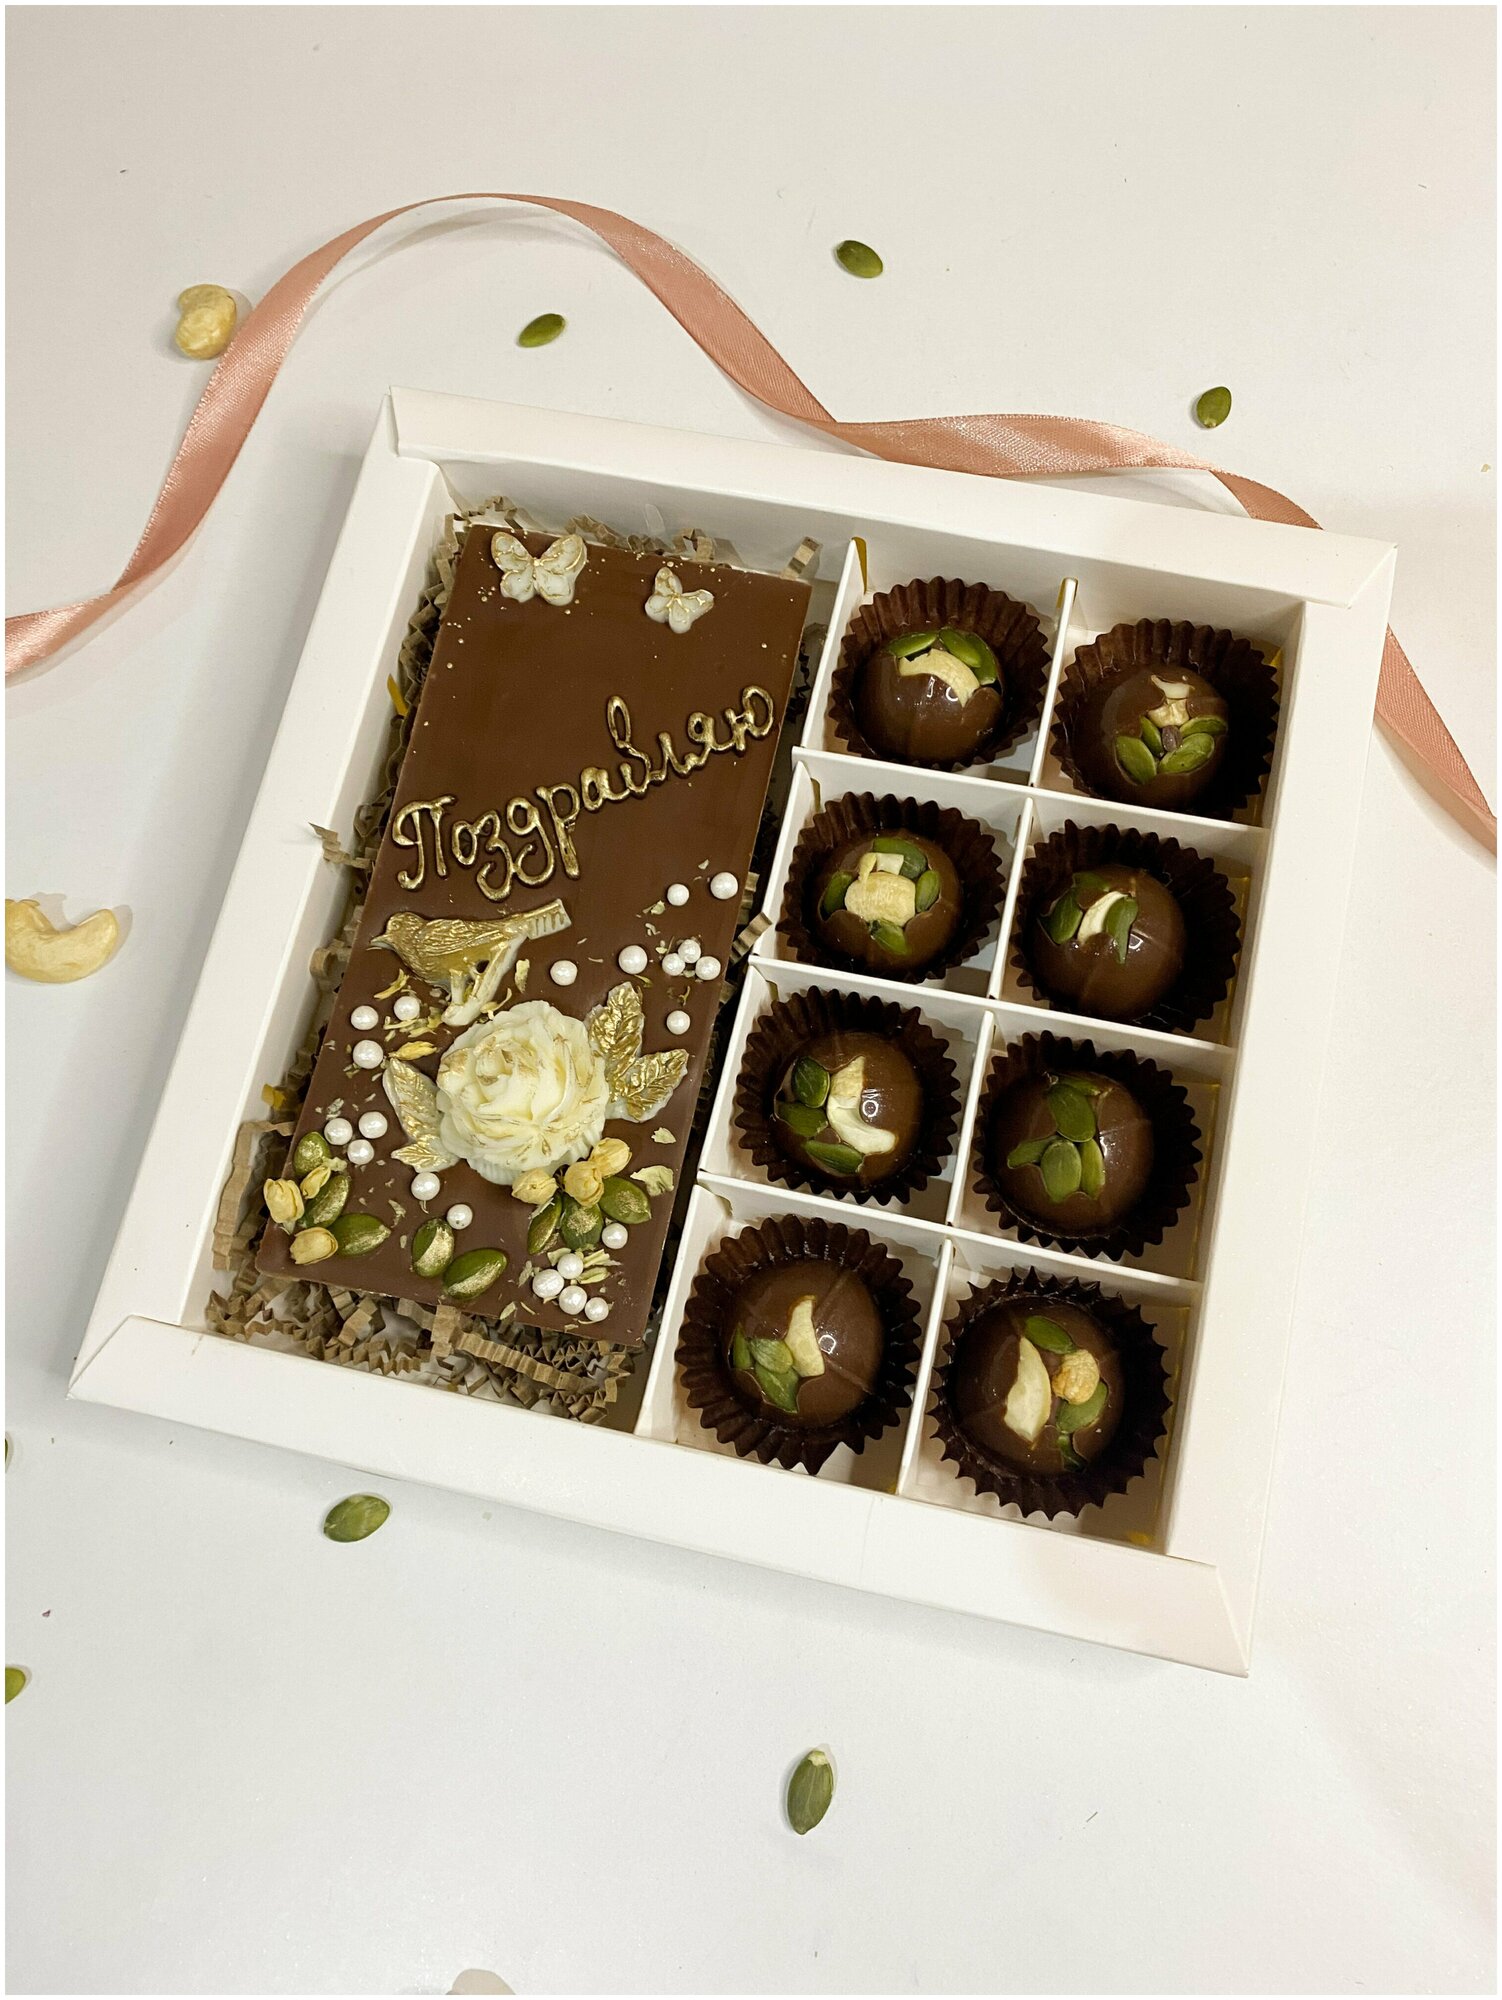 Бельгийский молочный шоколад, шоколадные конфеты с орехом, подарочный набор "Поздравляю", шоколадная открытка, KPfoodo - фотография № 2